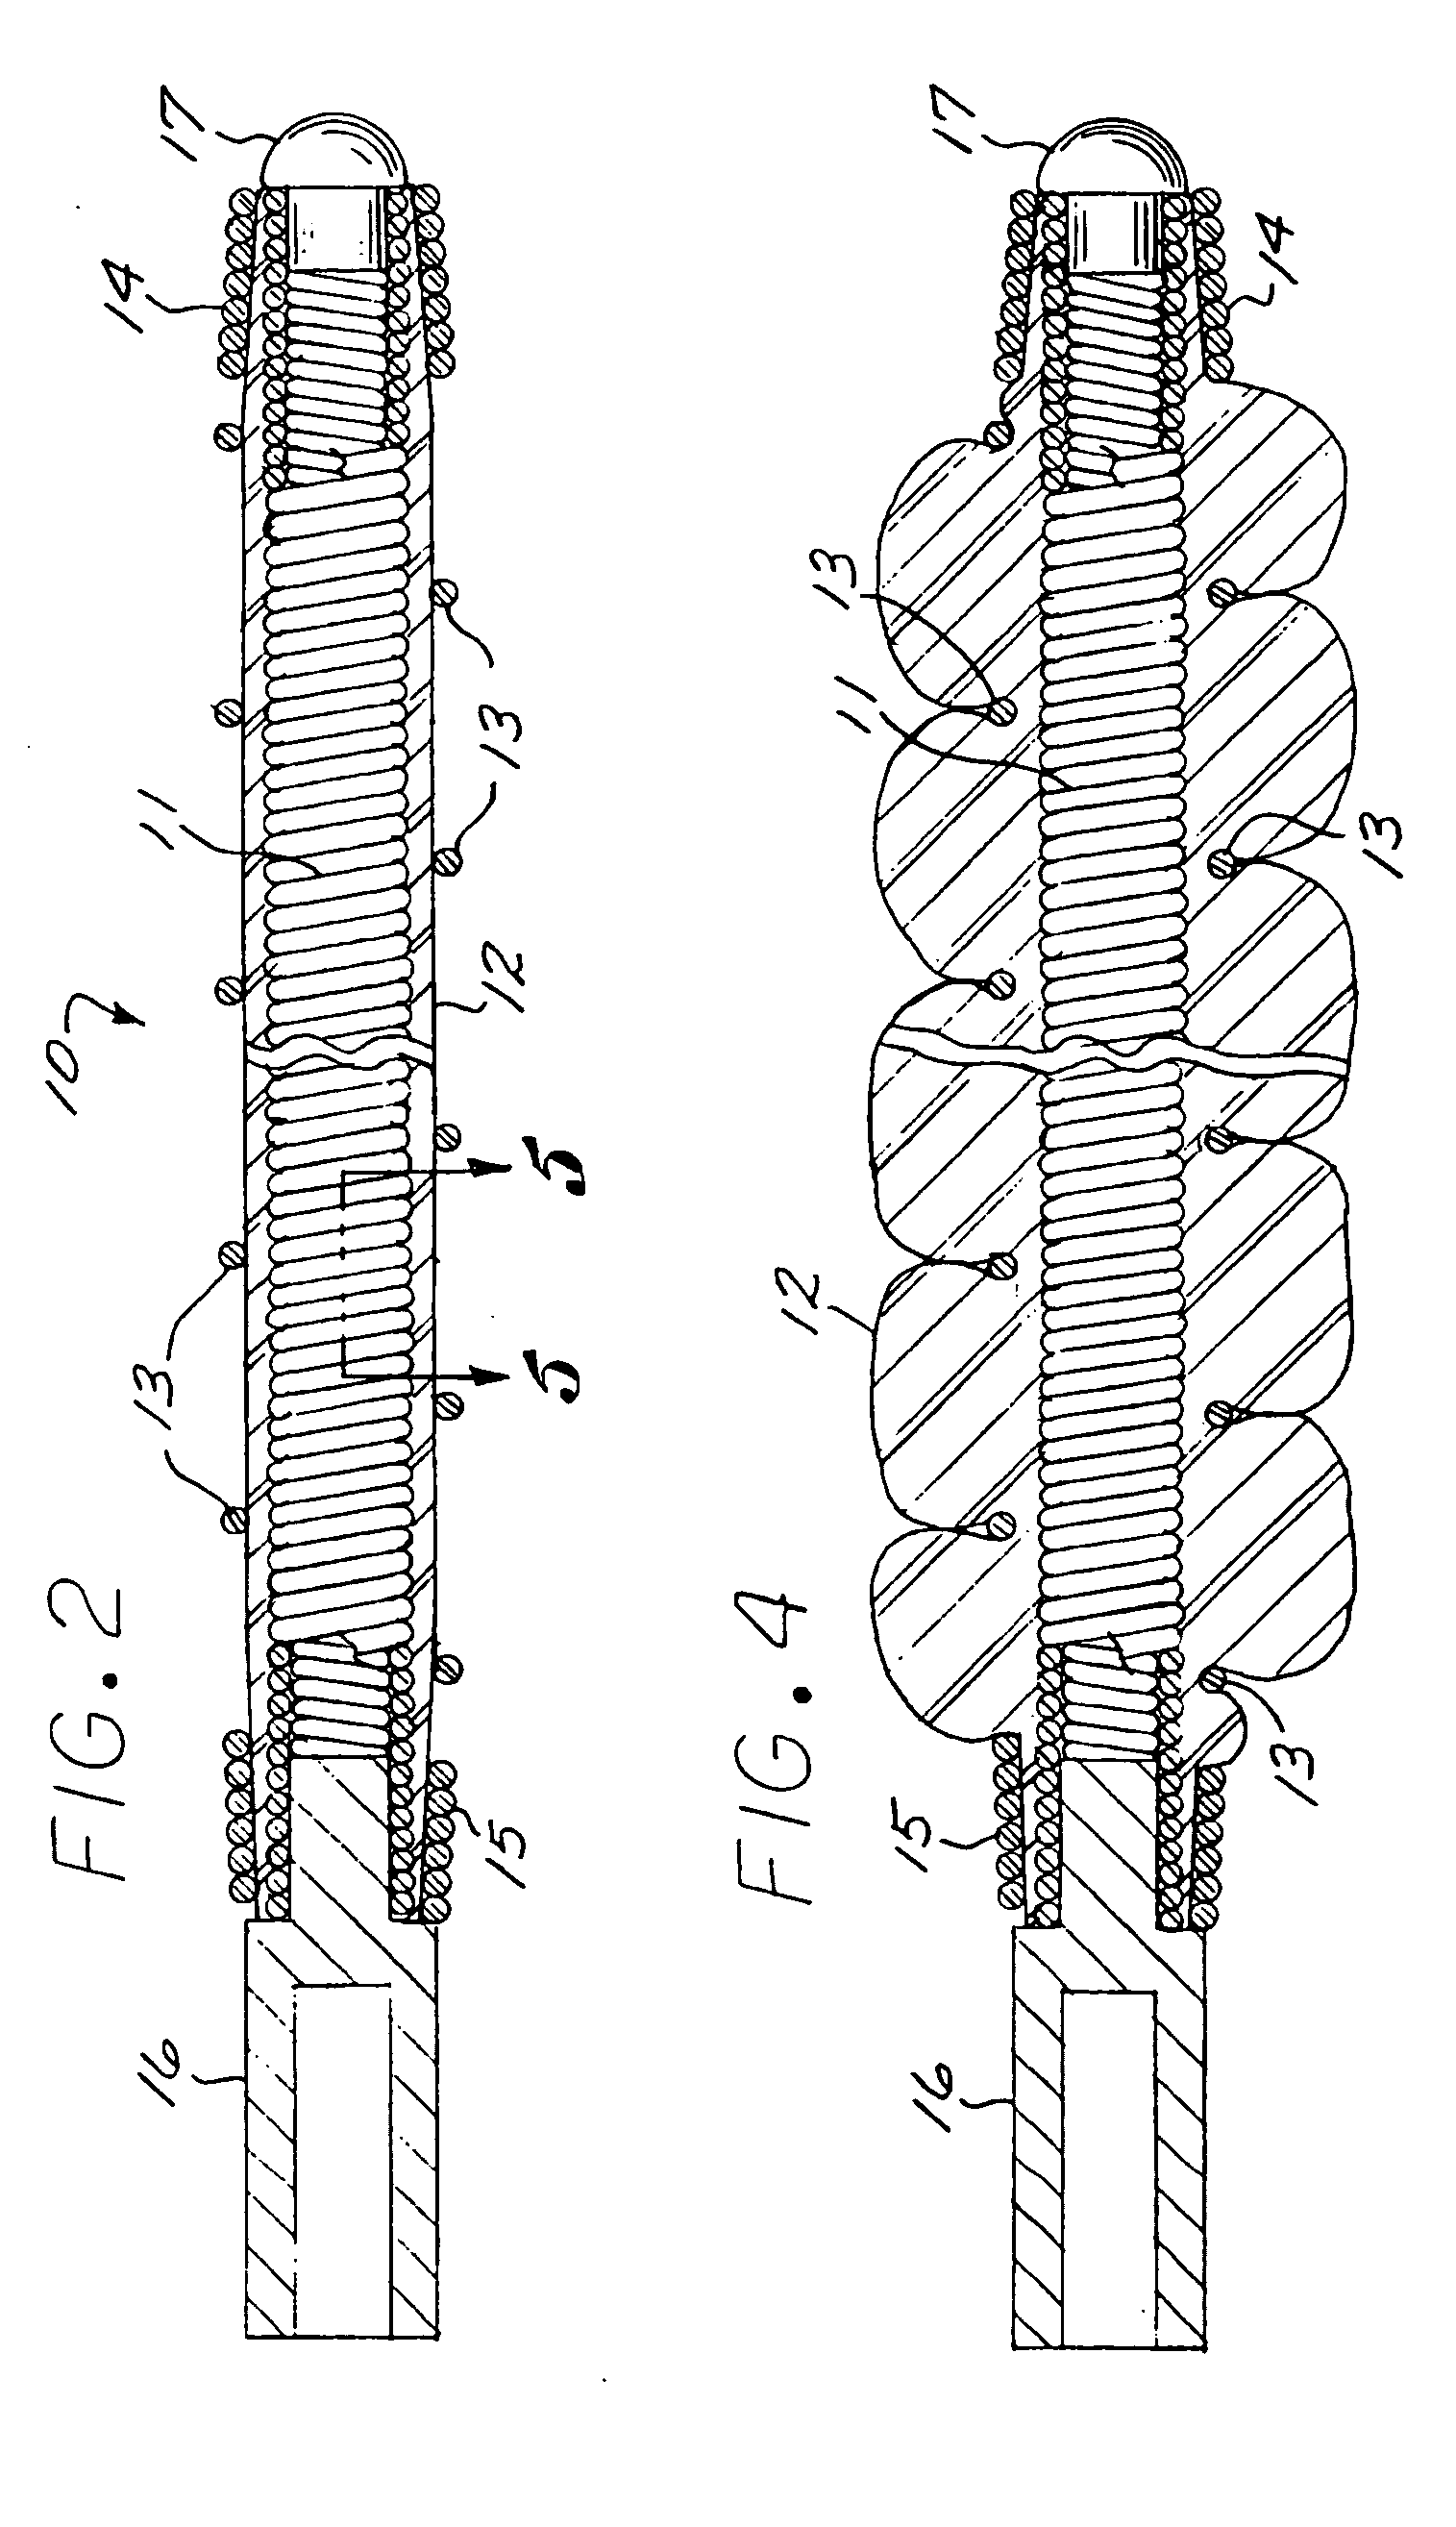 Multi-layer coaxial vaso-occlusive device